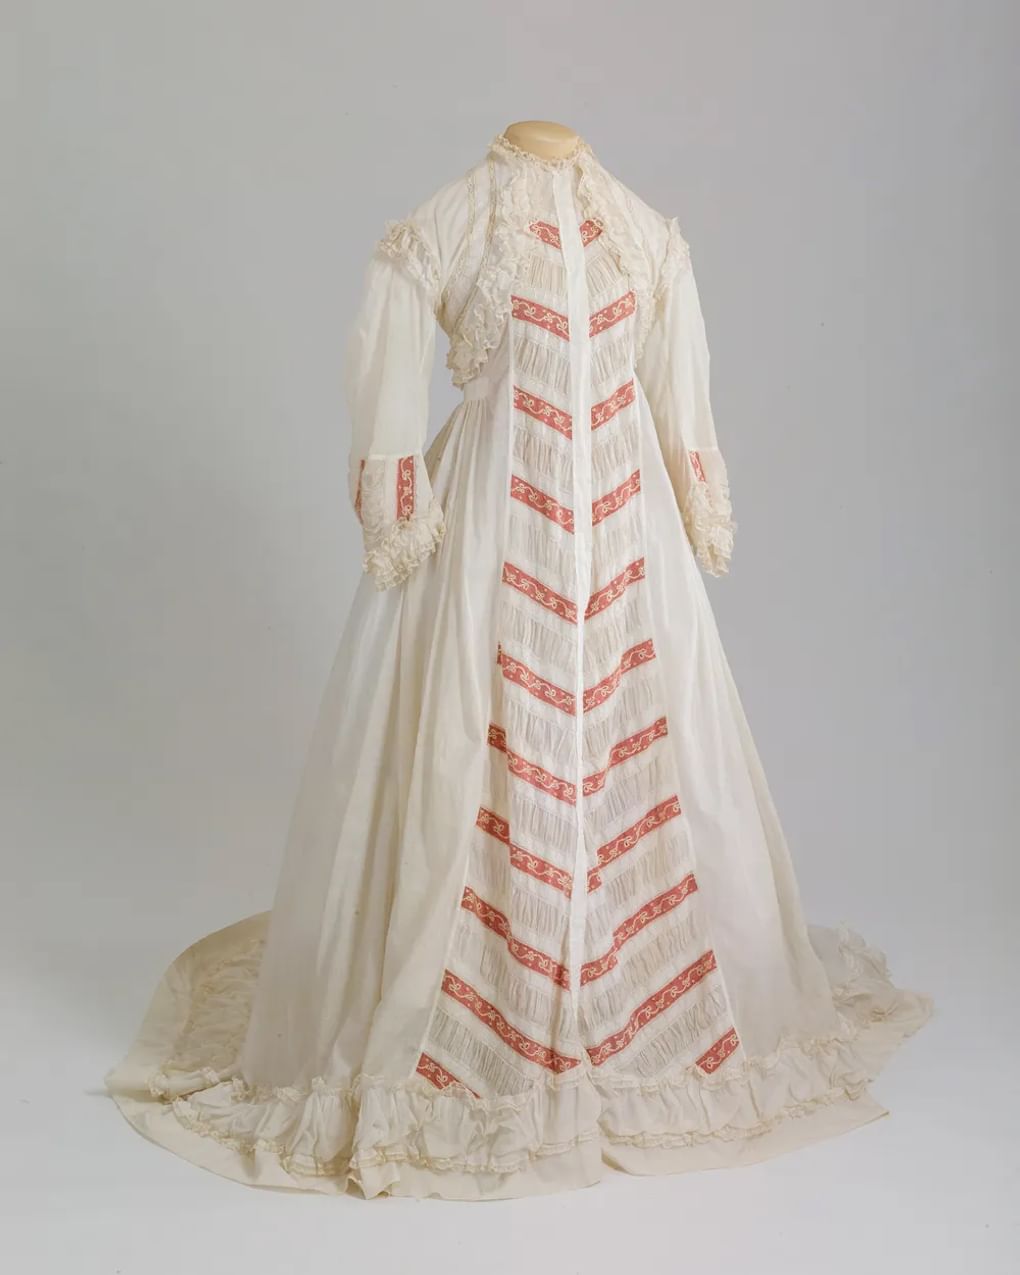 Утреннее платье из белого батиста со шлейфом. 1860-е. Государственный Эрмитаж, Санкт-Петербург